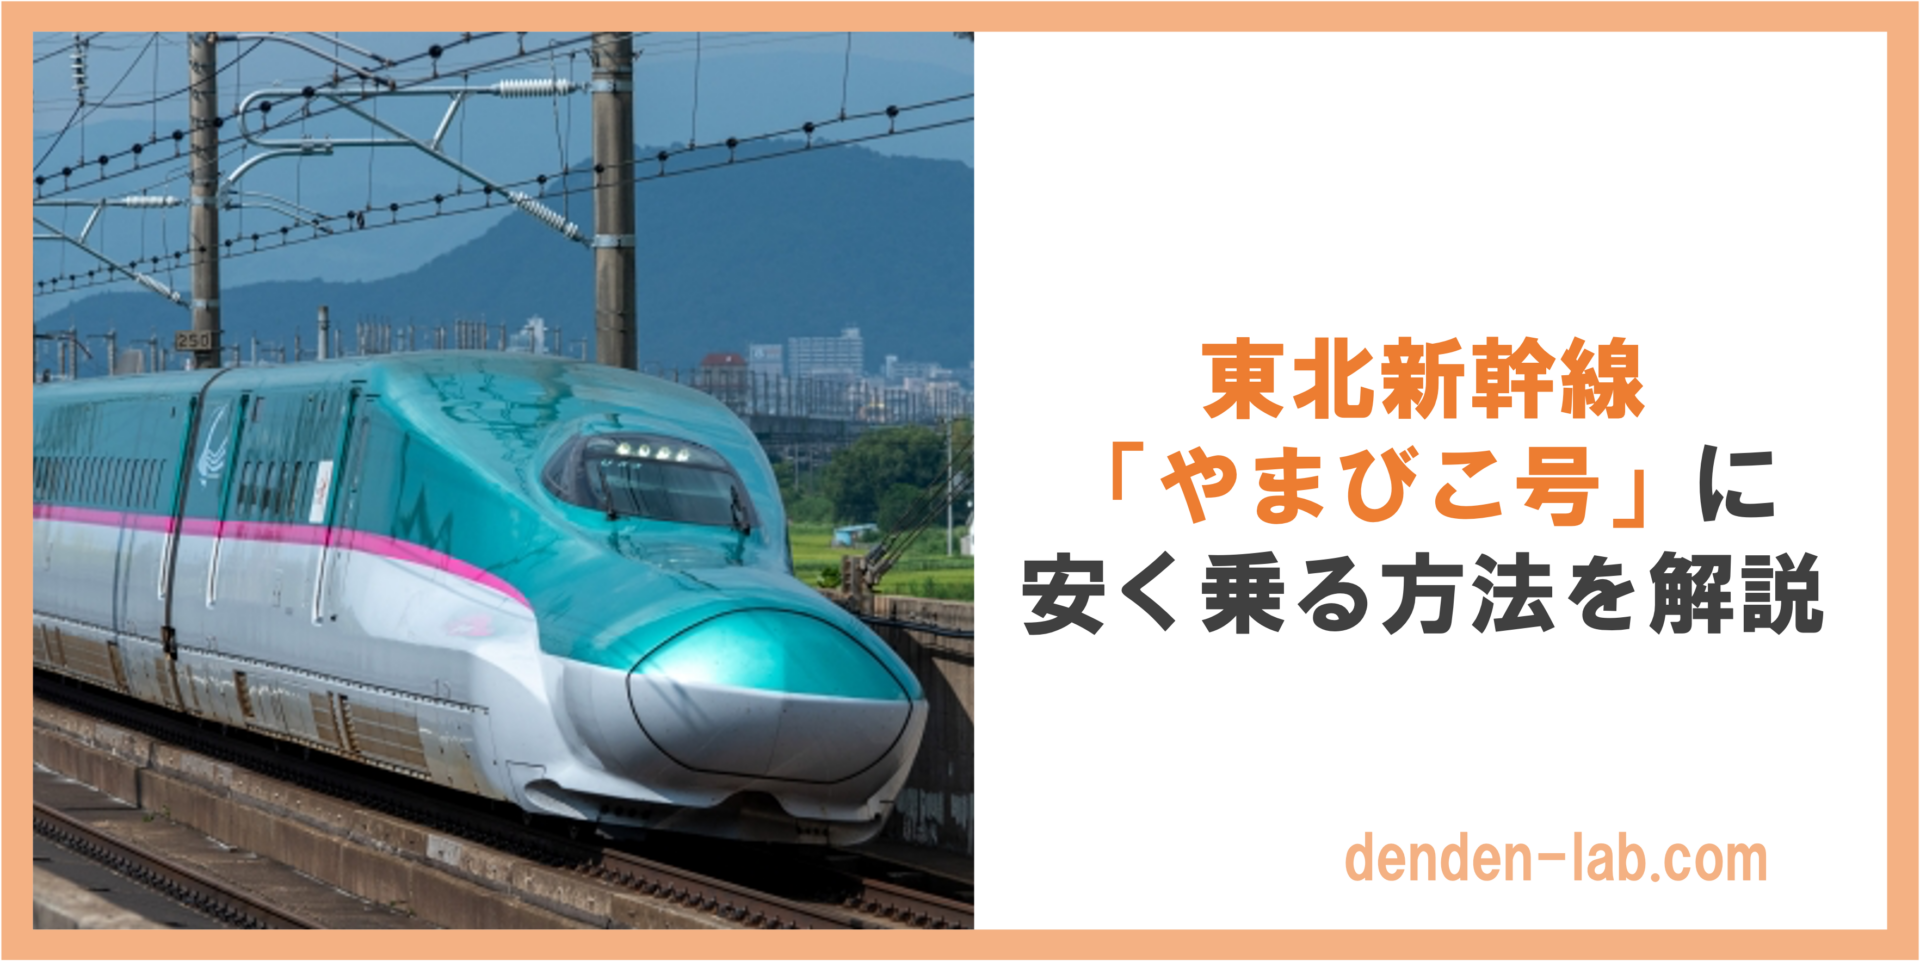 東北新幹線 「やまびこ号」に 安く乗る方法を解説